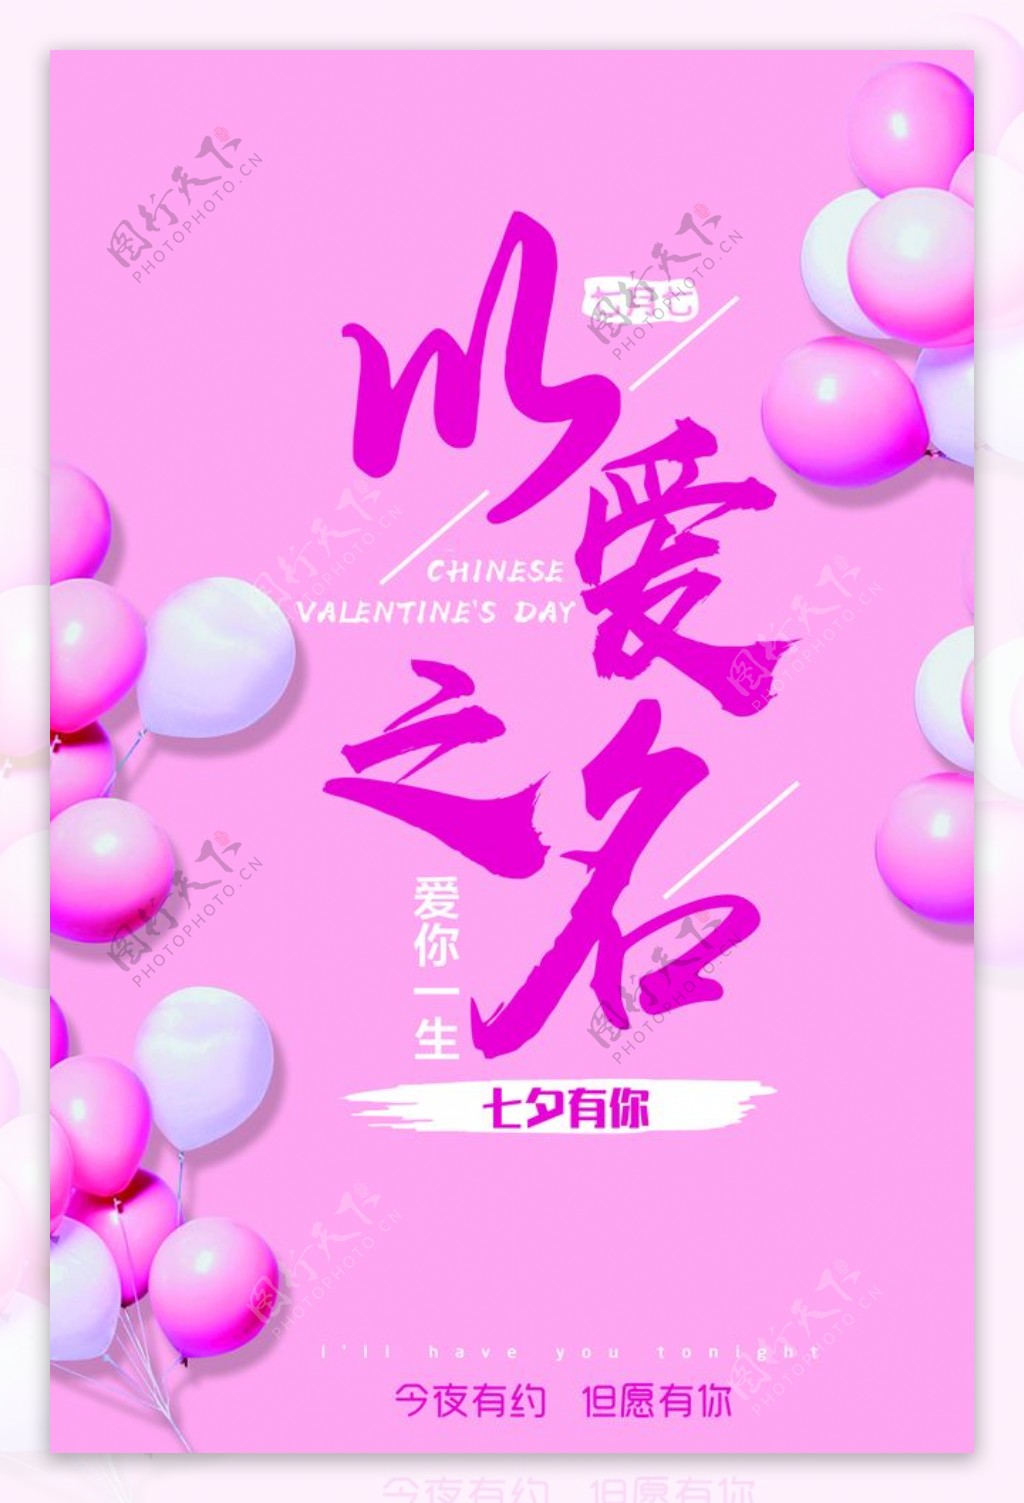 以爱之名气球粉色高端海报宣传画